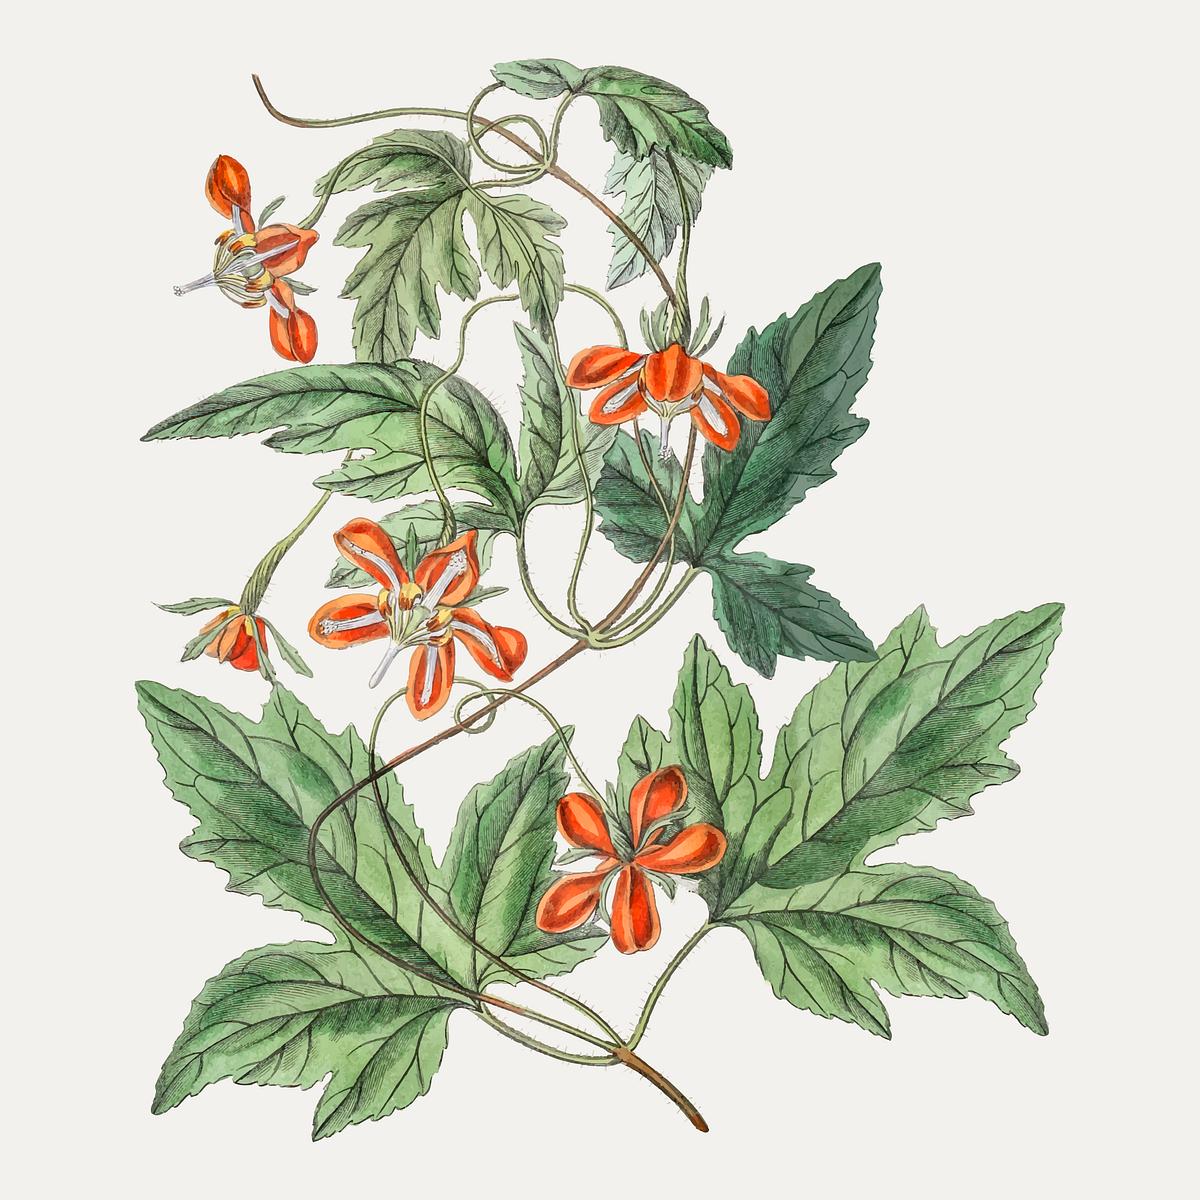 Maple leaf loasa | Free stock illustration - 559111